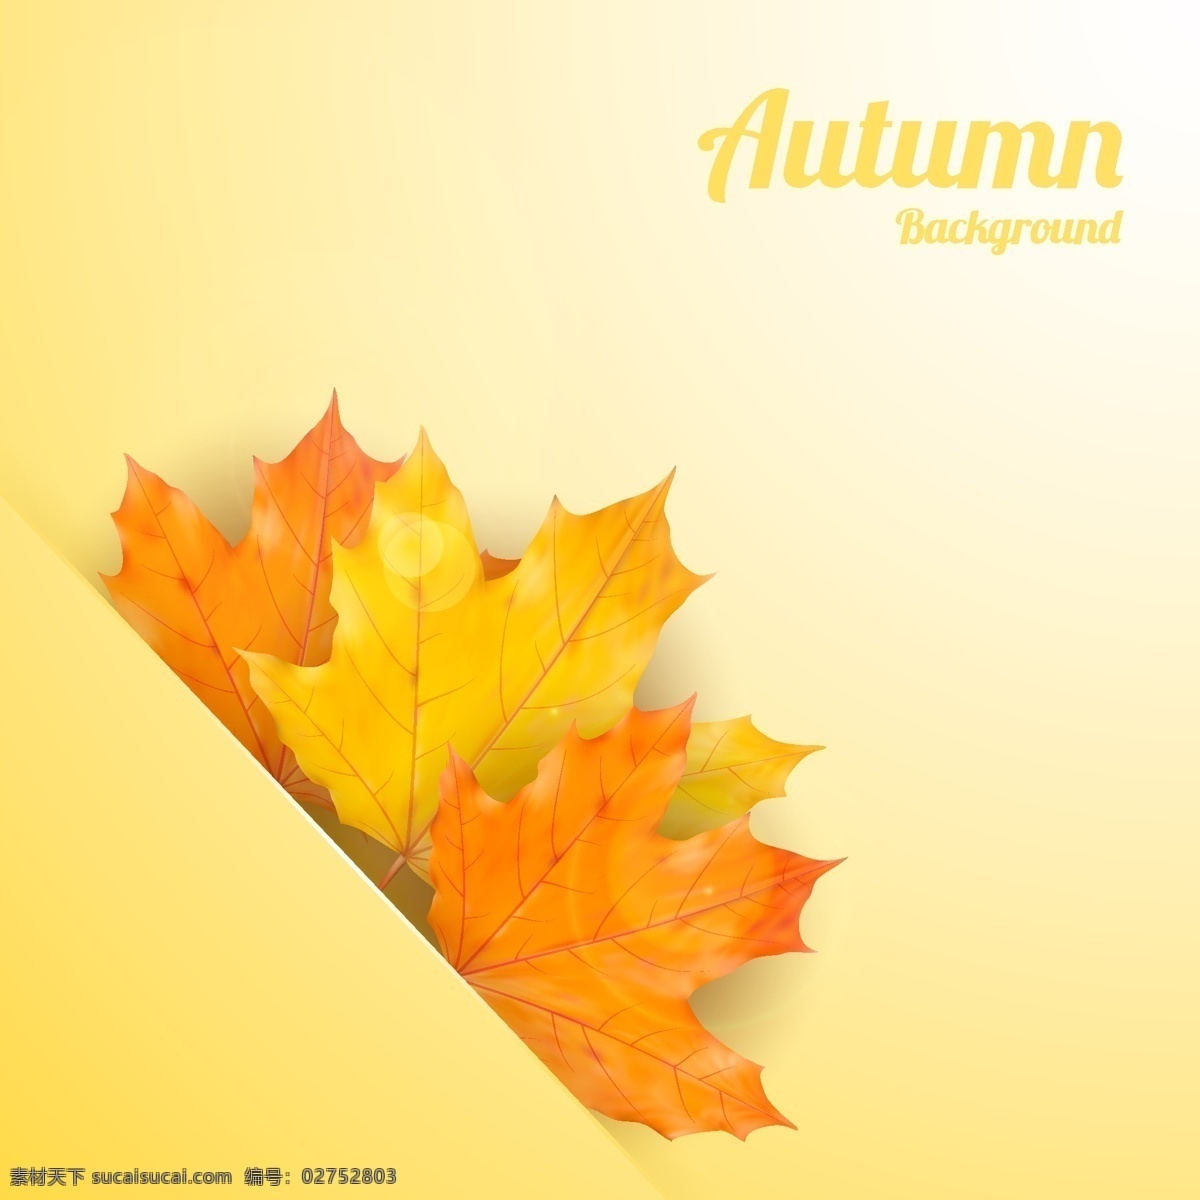 秋季 镶嵌 树叶 背景 矢量 嵌入 秋叶 枫叶 光晕 矢量图